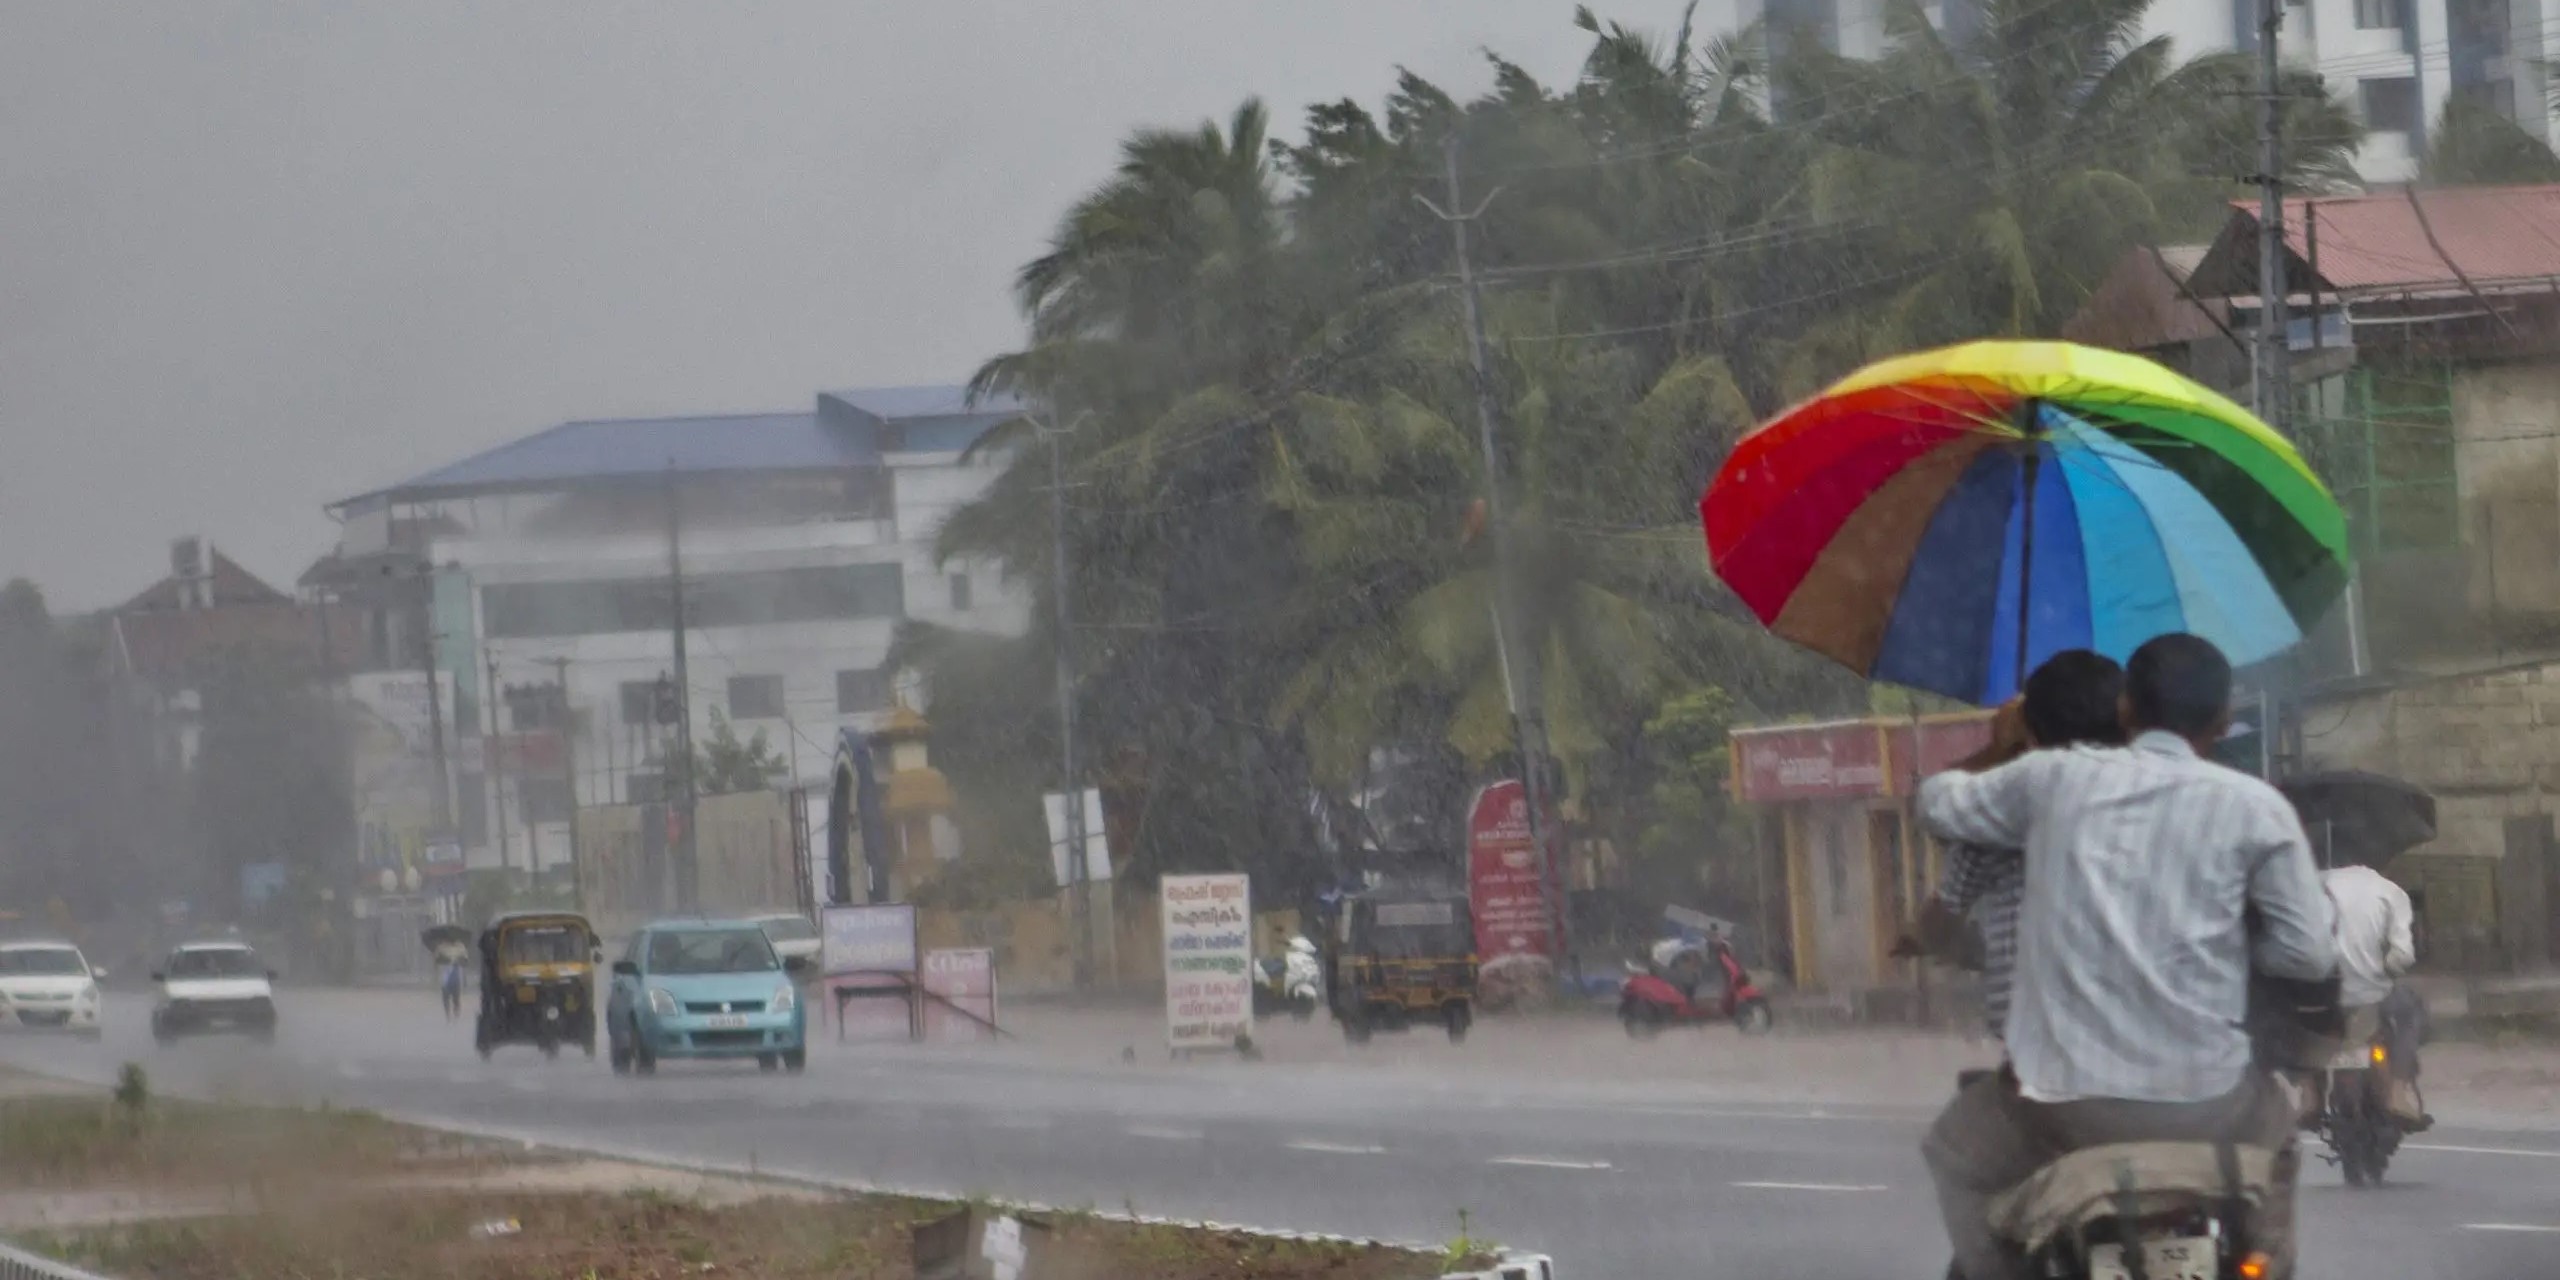 Kerala monsoon rains